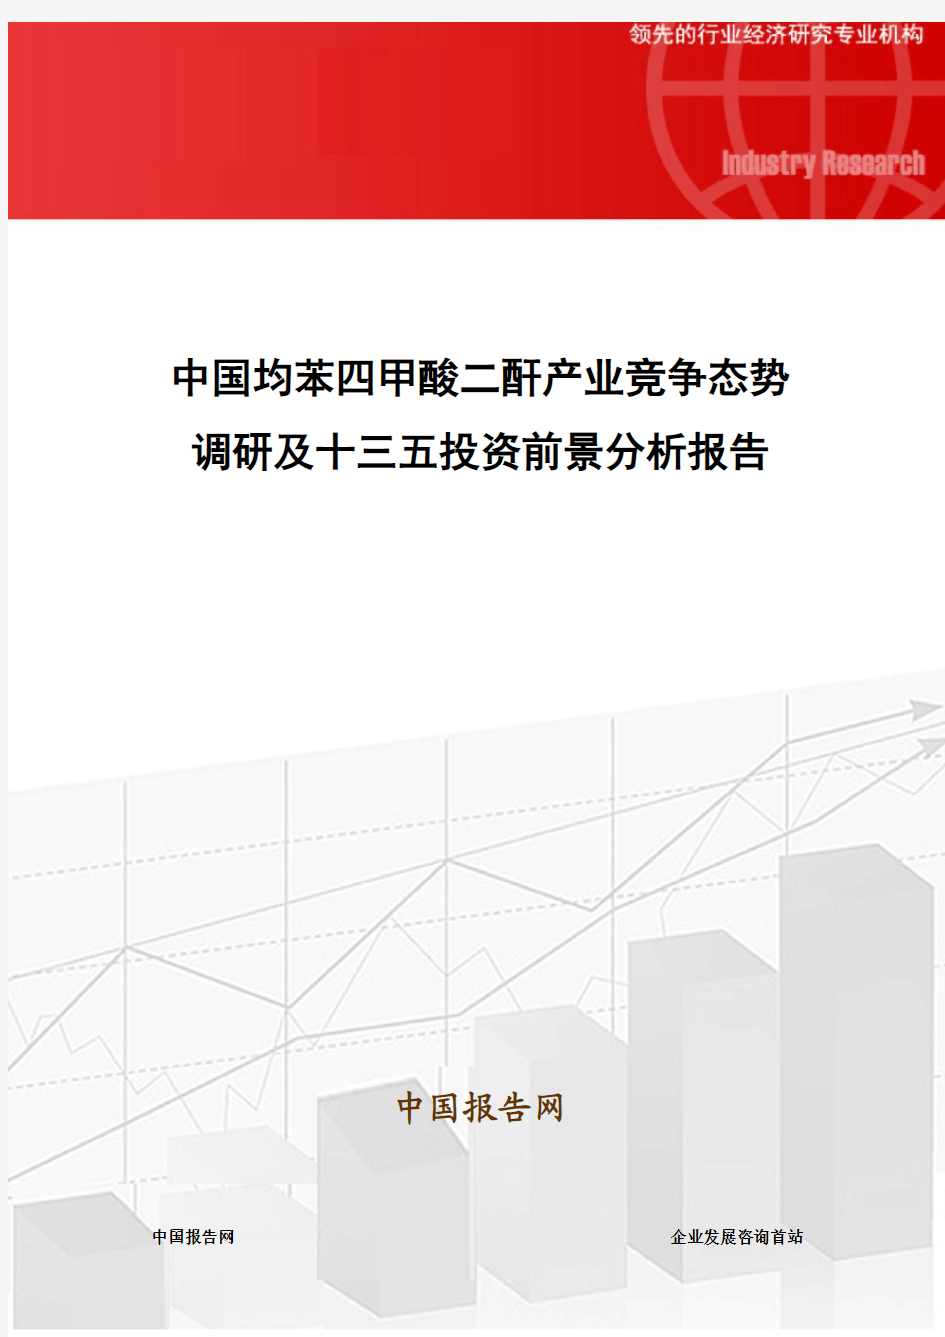 中国均苯四甲酸二酐产业竞争态势调研及十三五投资前景分析报告